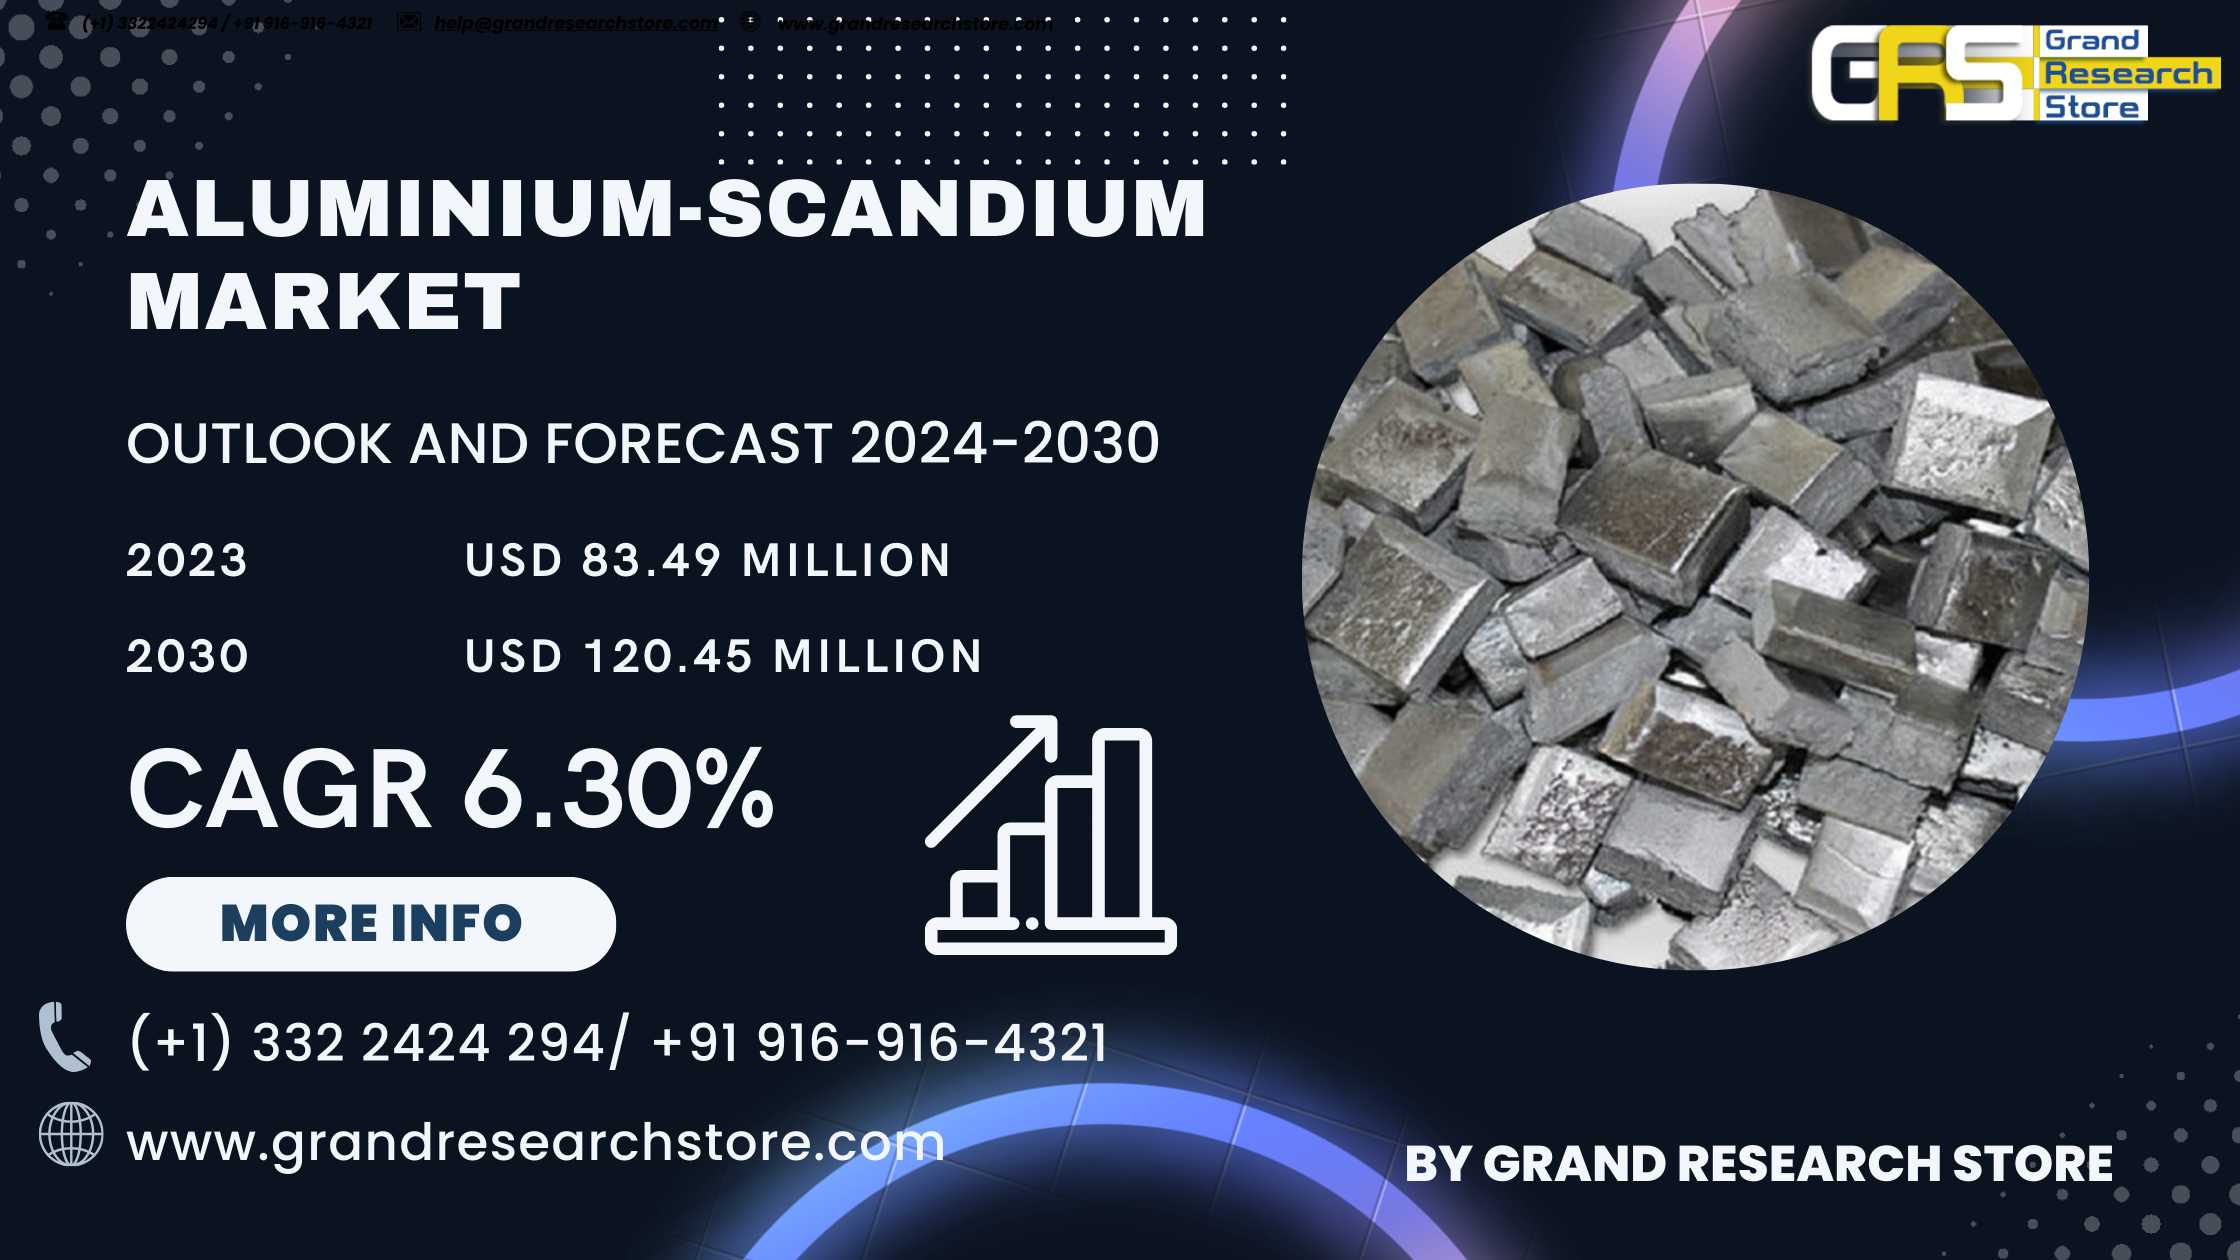 Global Aluminium-Scandium Market Research Report 2..